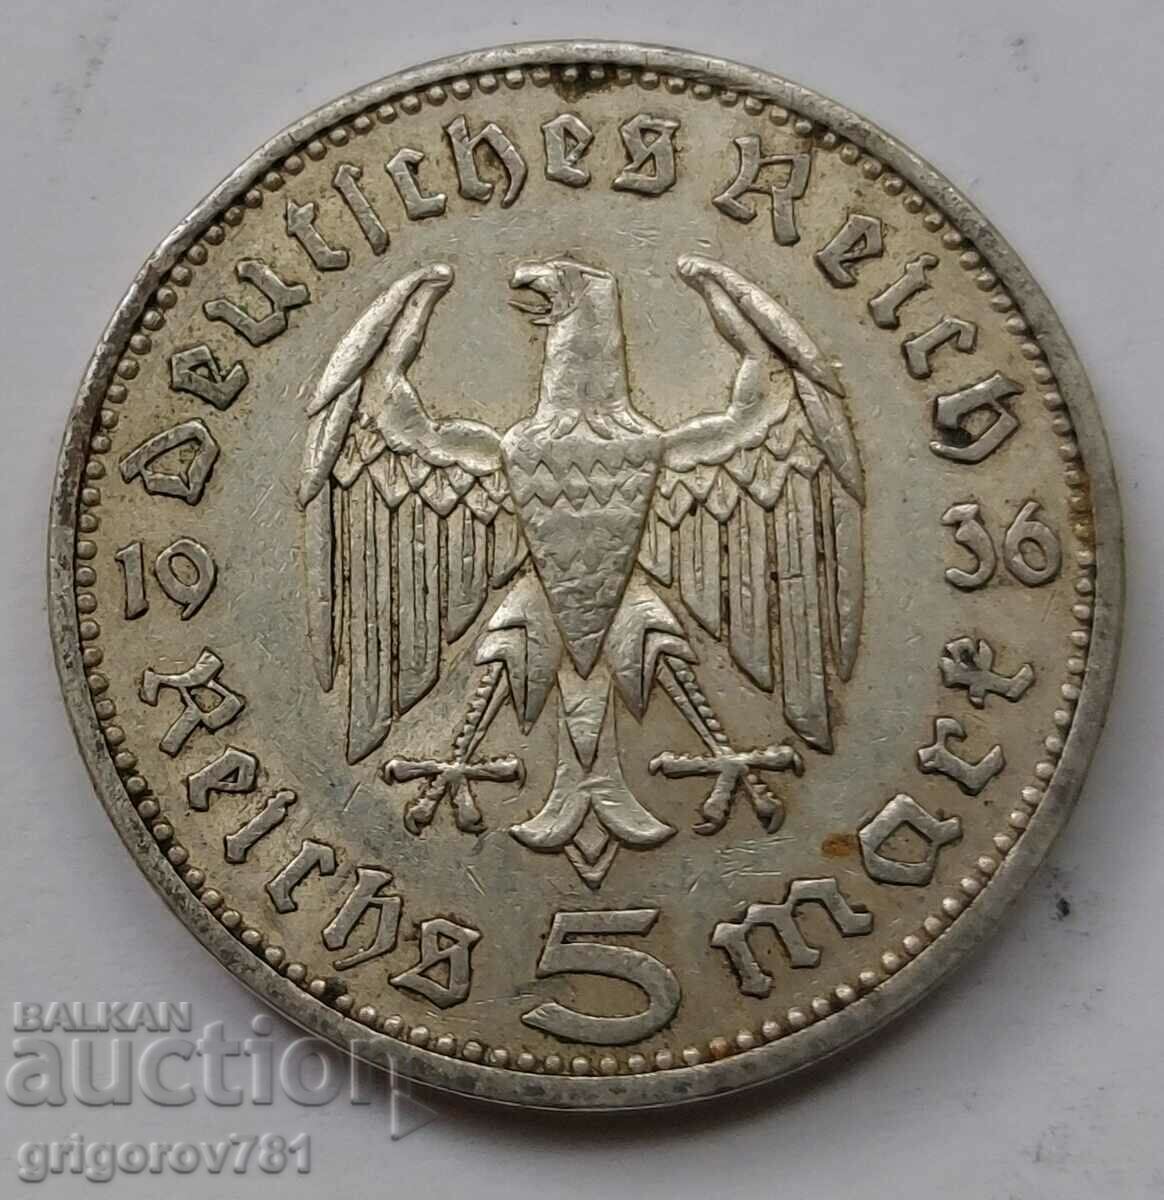 5 mărci de argint Germania 1936 A III Reich Moneda de argint #40